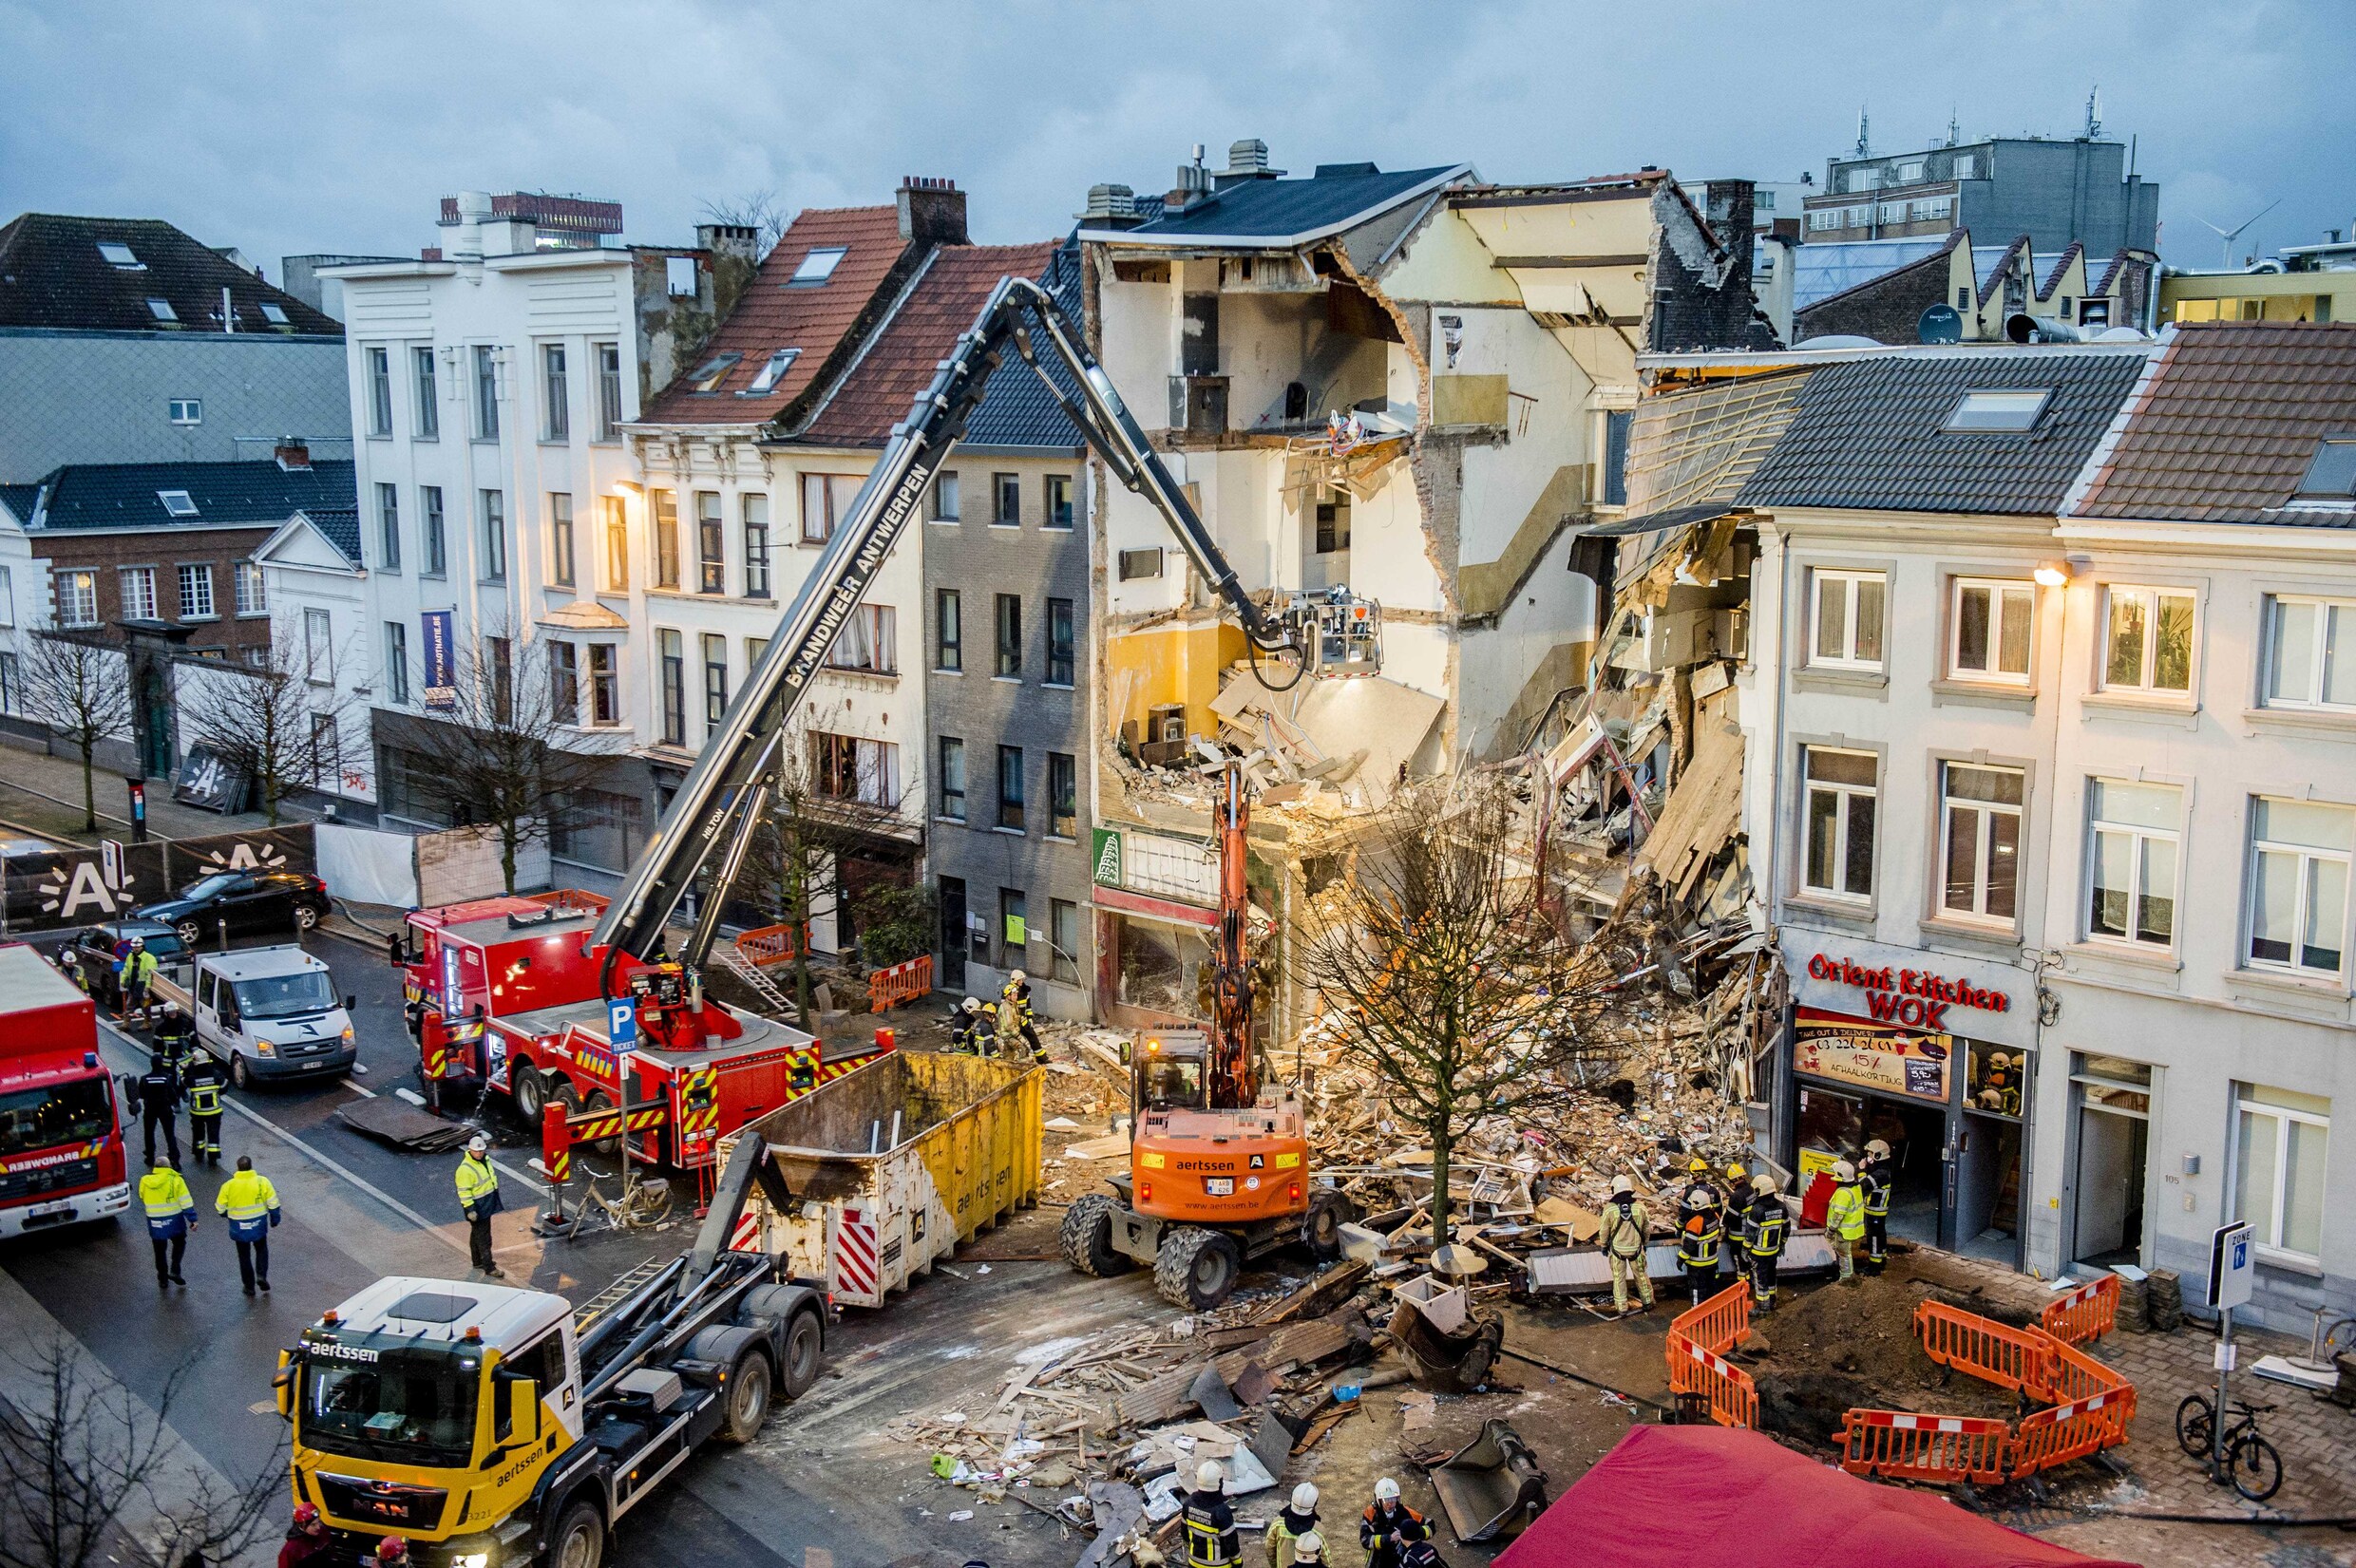 Achttien maanden cel voor huurder ontploft pand Paardenmarkt in Antwerpen